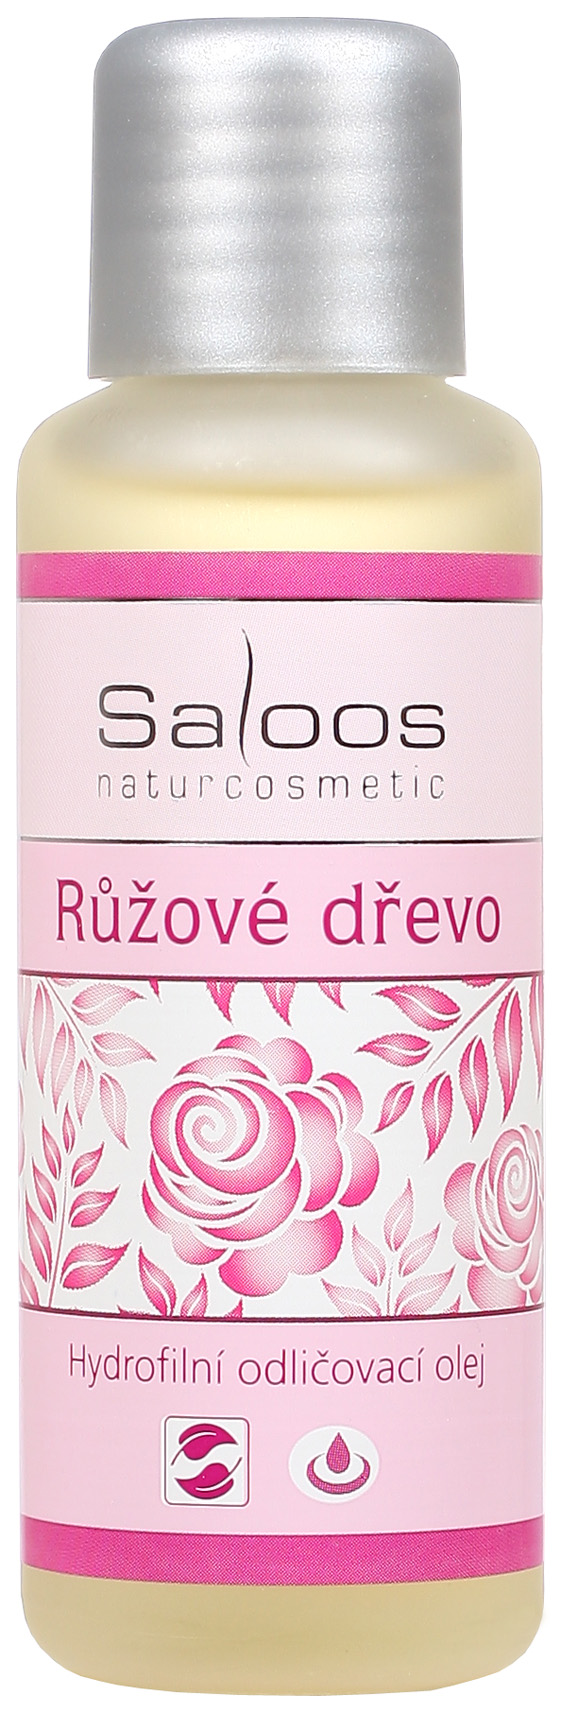 Hydrofilný odličovací olej Ružové drevo SALOOS Naturcosmetics 50 ml